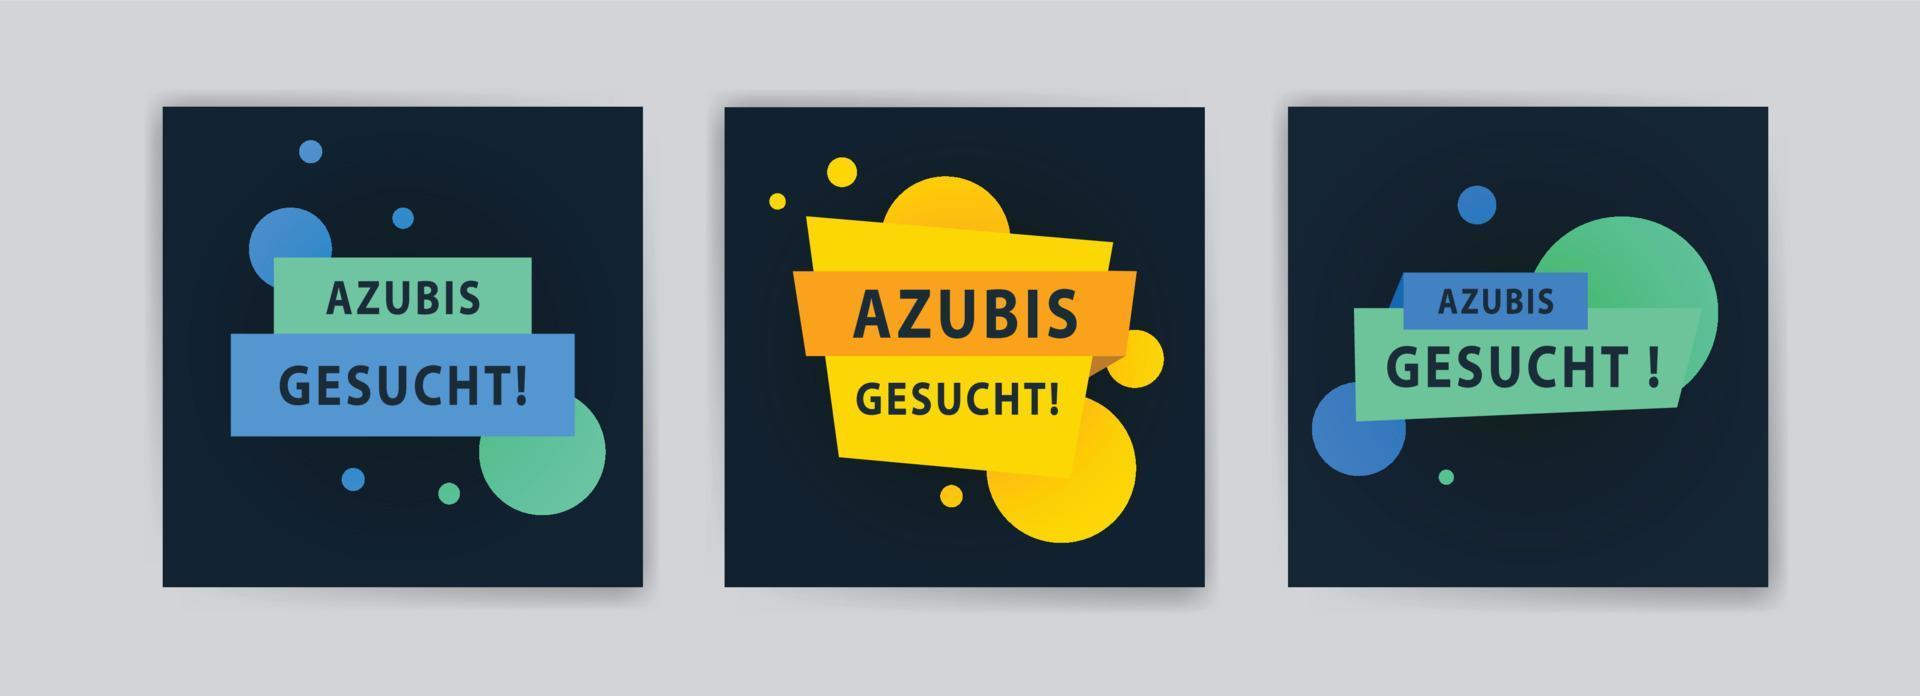 azubis gesucht. banners vectoriales para fondos, tarjetas de felicitación, anuncios de publicaciones en redes sociales y postales. vector